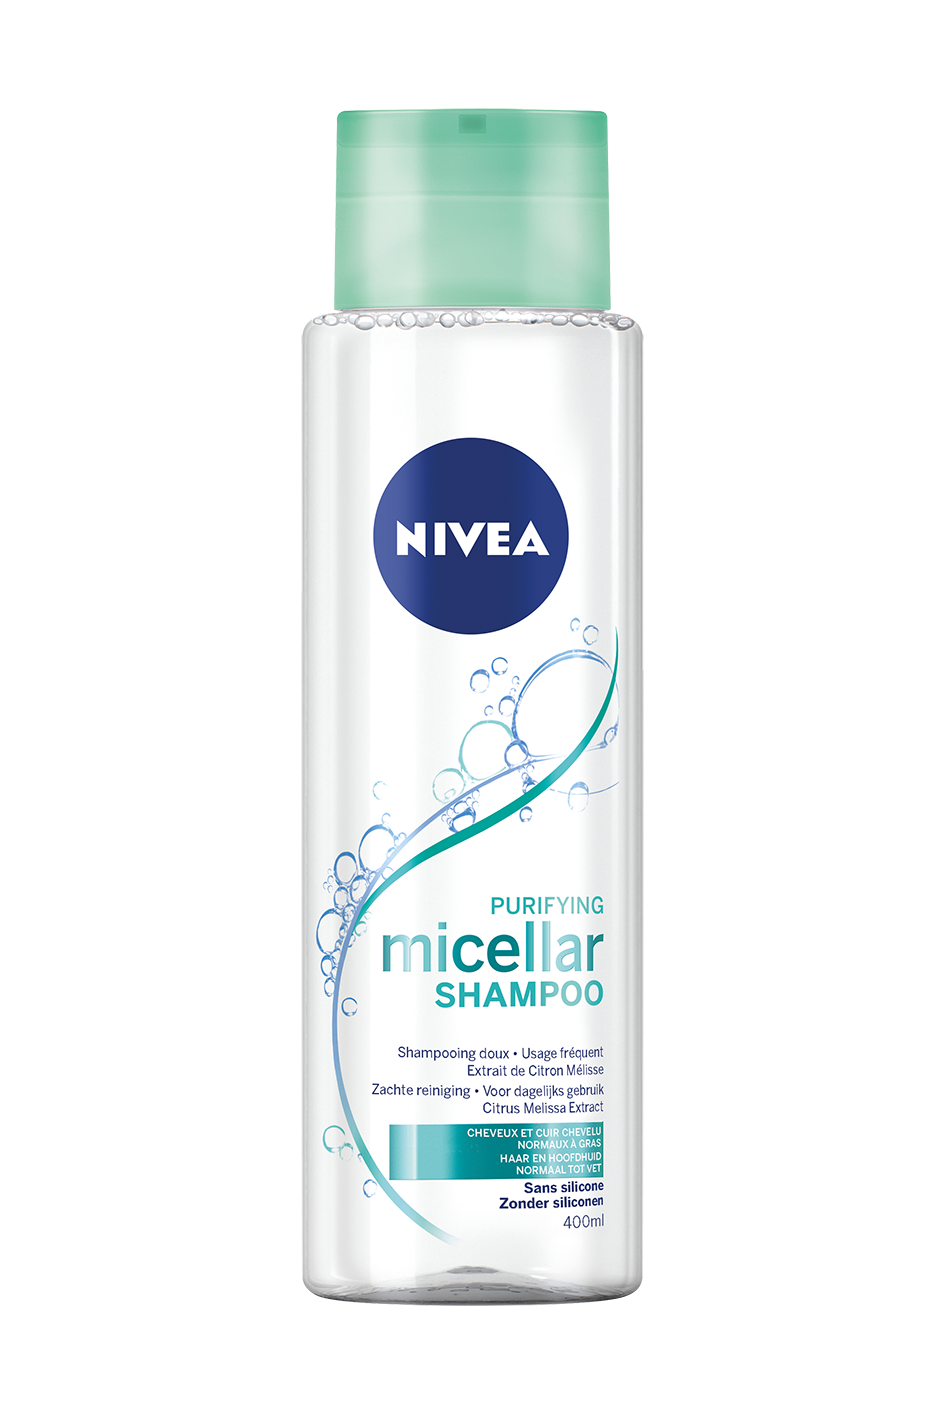 Haartip: De nieuwe micellaire shampoo van Nivea - 1